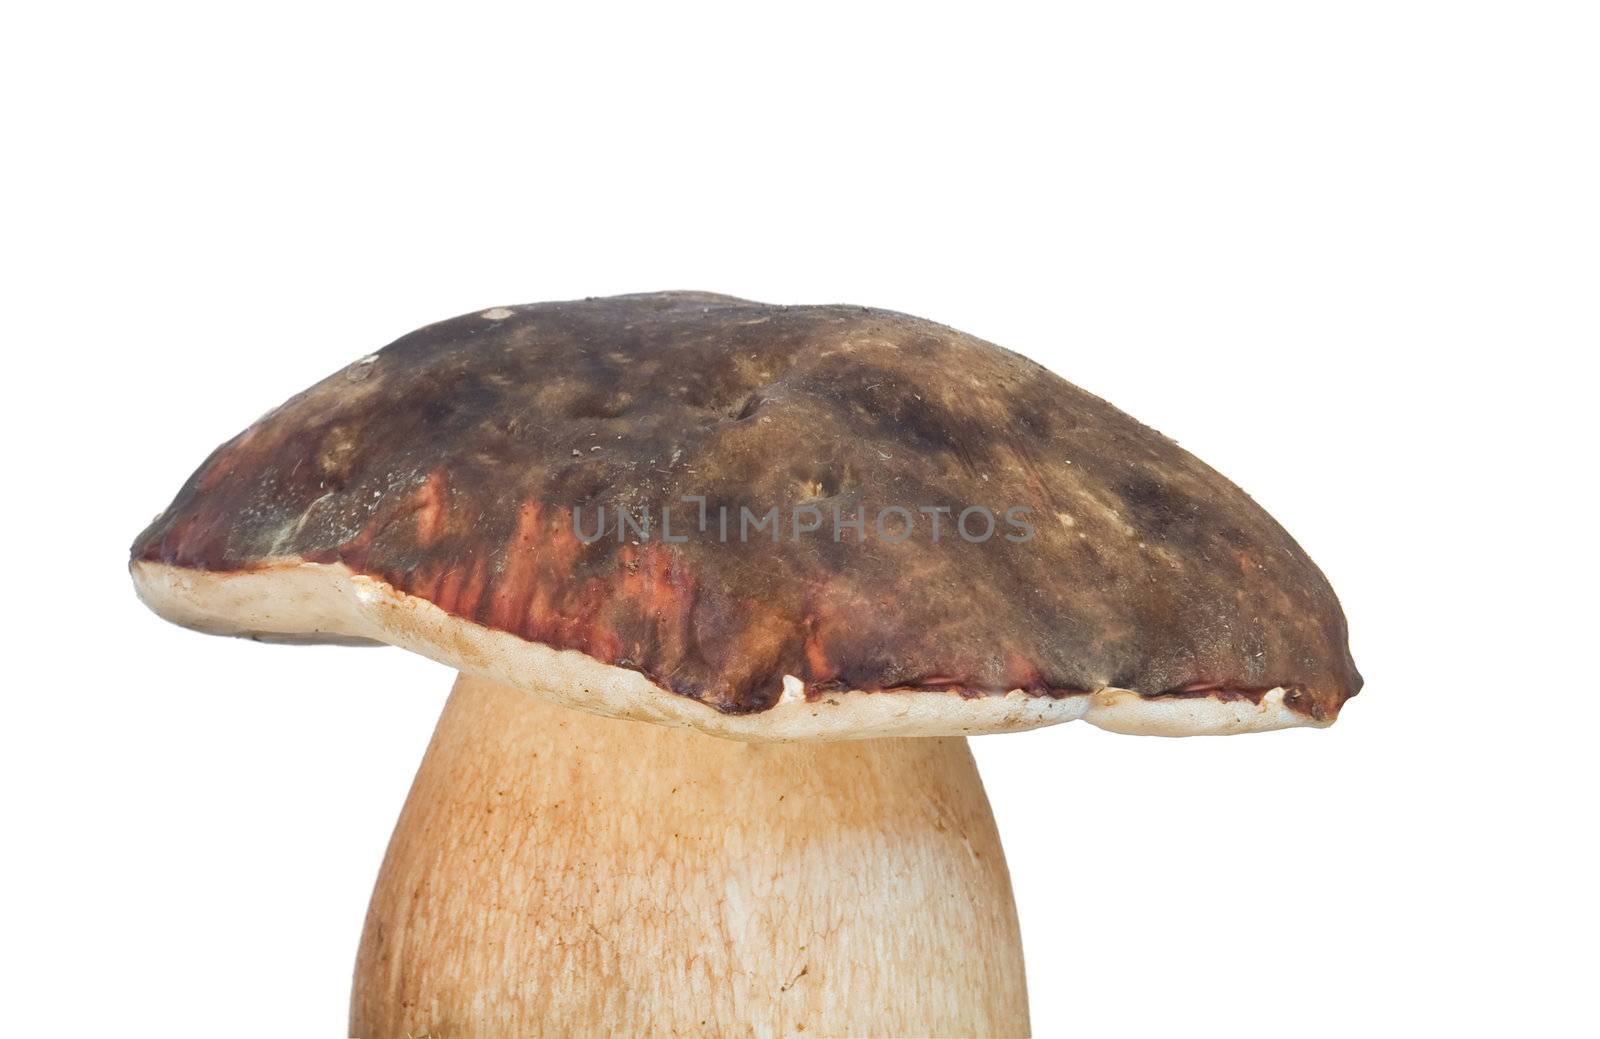 porcini mushroom on the white